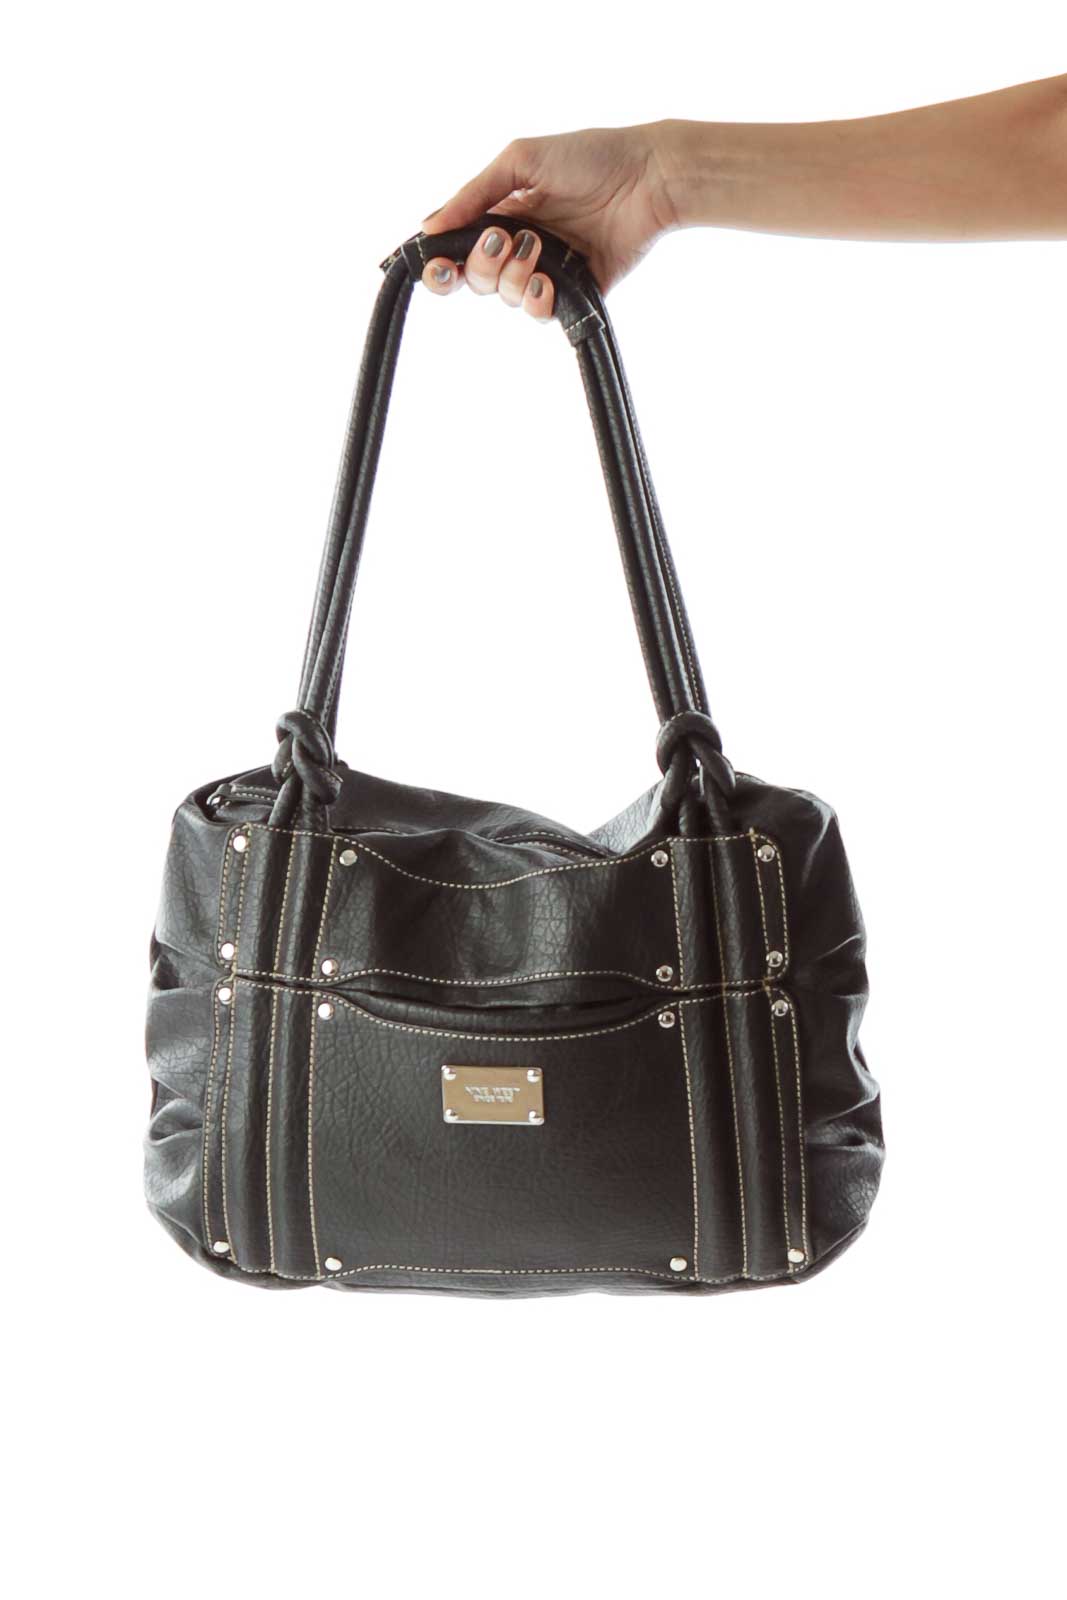 Black Faux-Leather Shoulder Bag Front